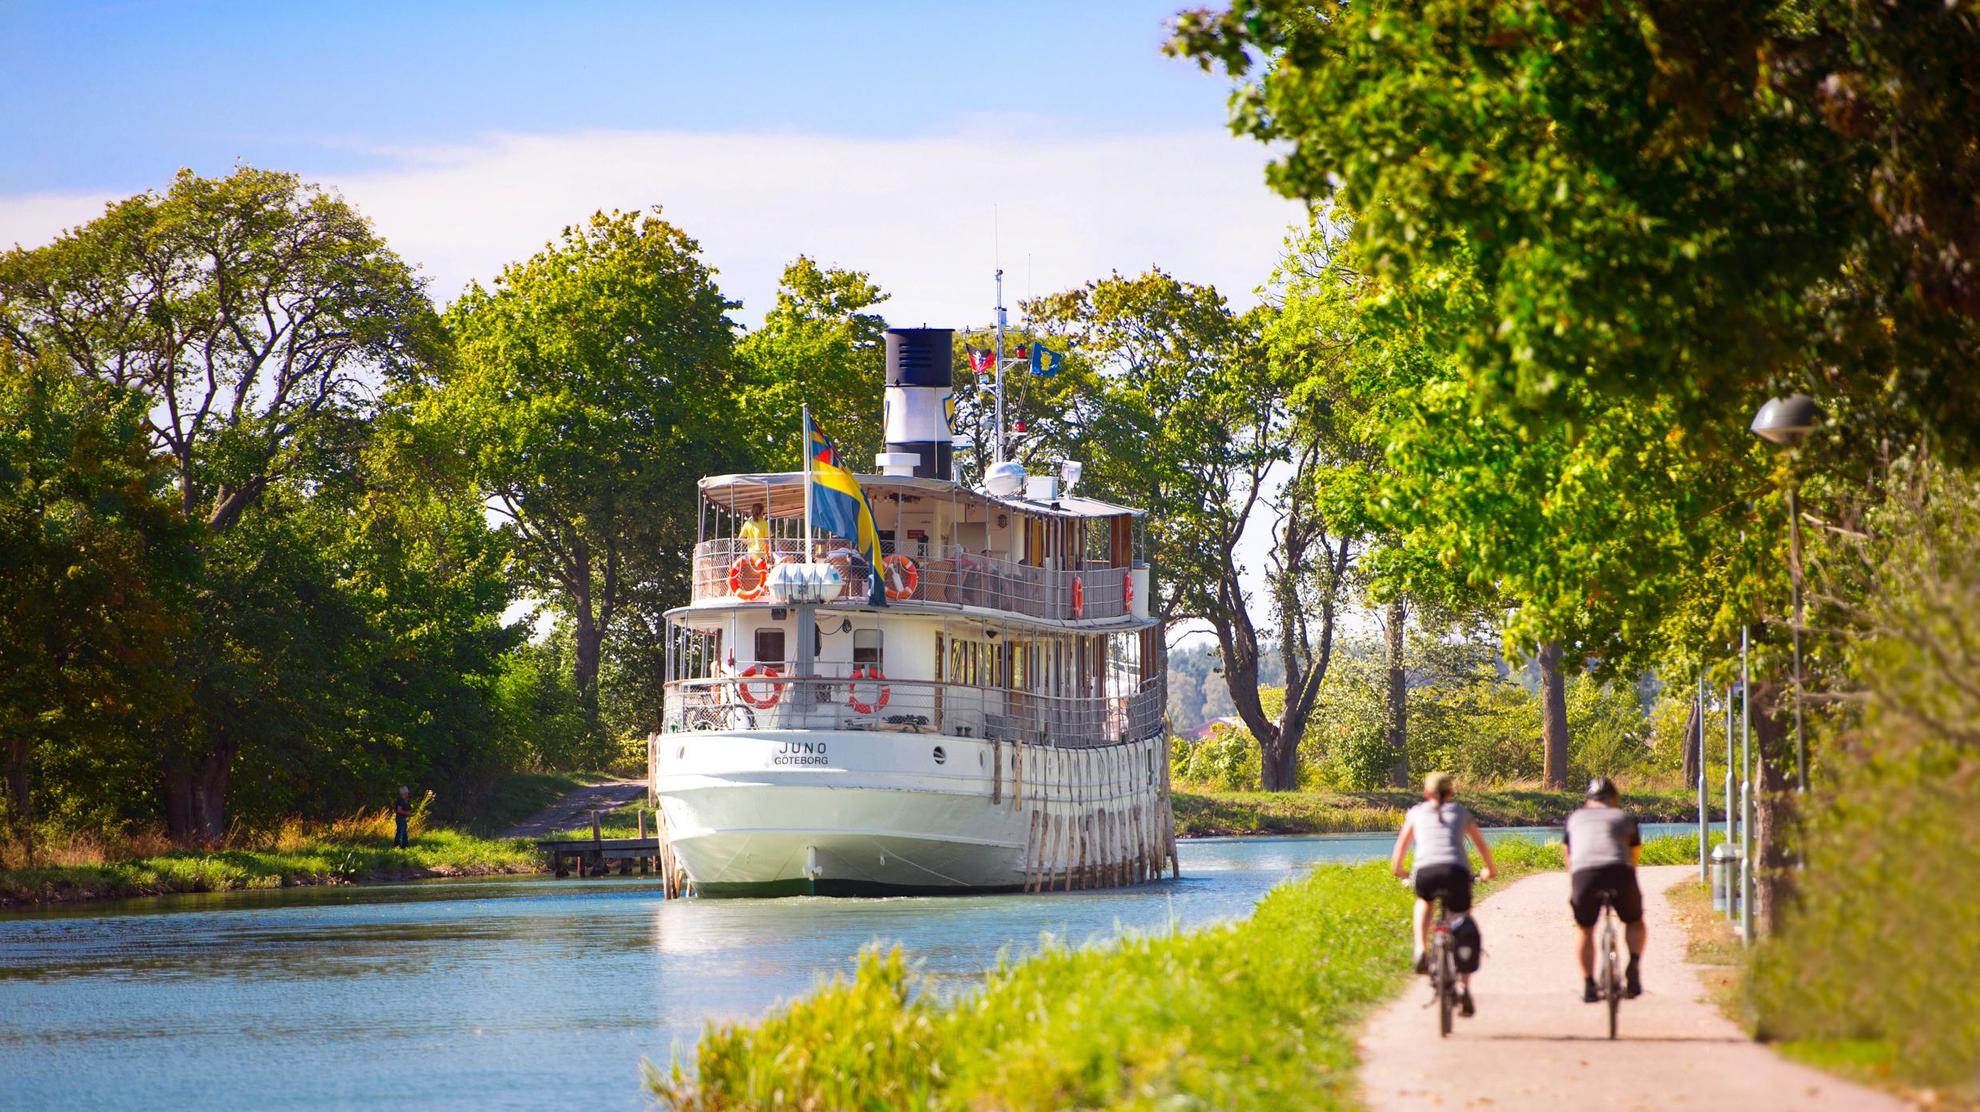 C'est l'été et deux personnes font du vélo à côté de l'eau du canal Göta. Un bateau se déplace le long du canal.